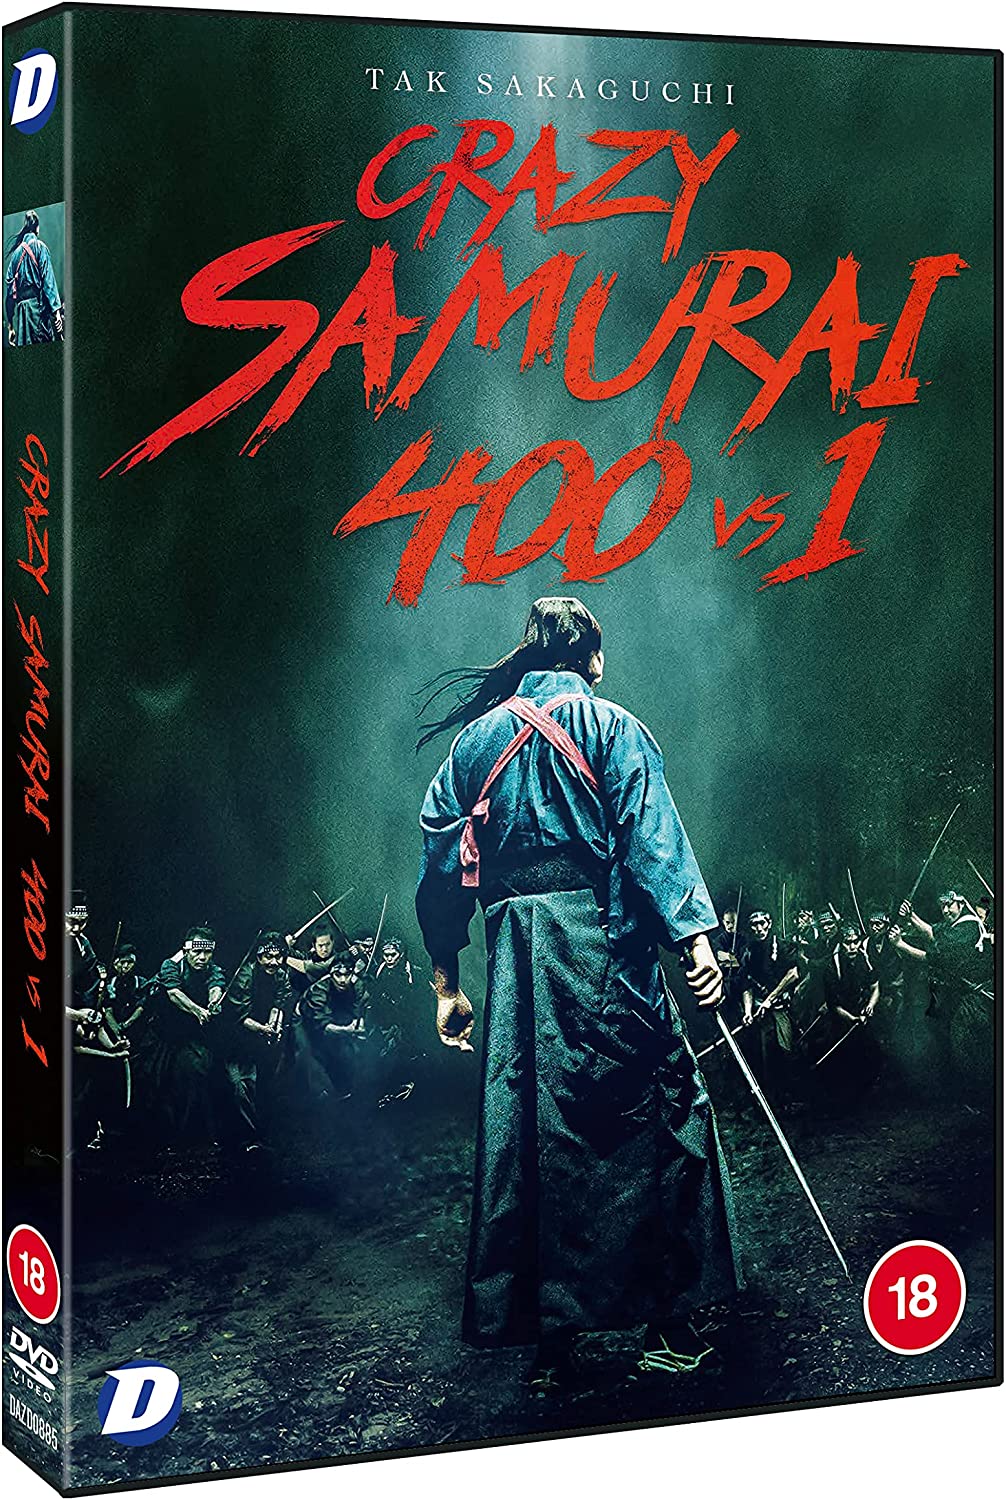 Crazy Samurai: 400 vs 1 [2020] - Action [DVD]